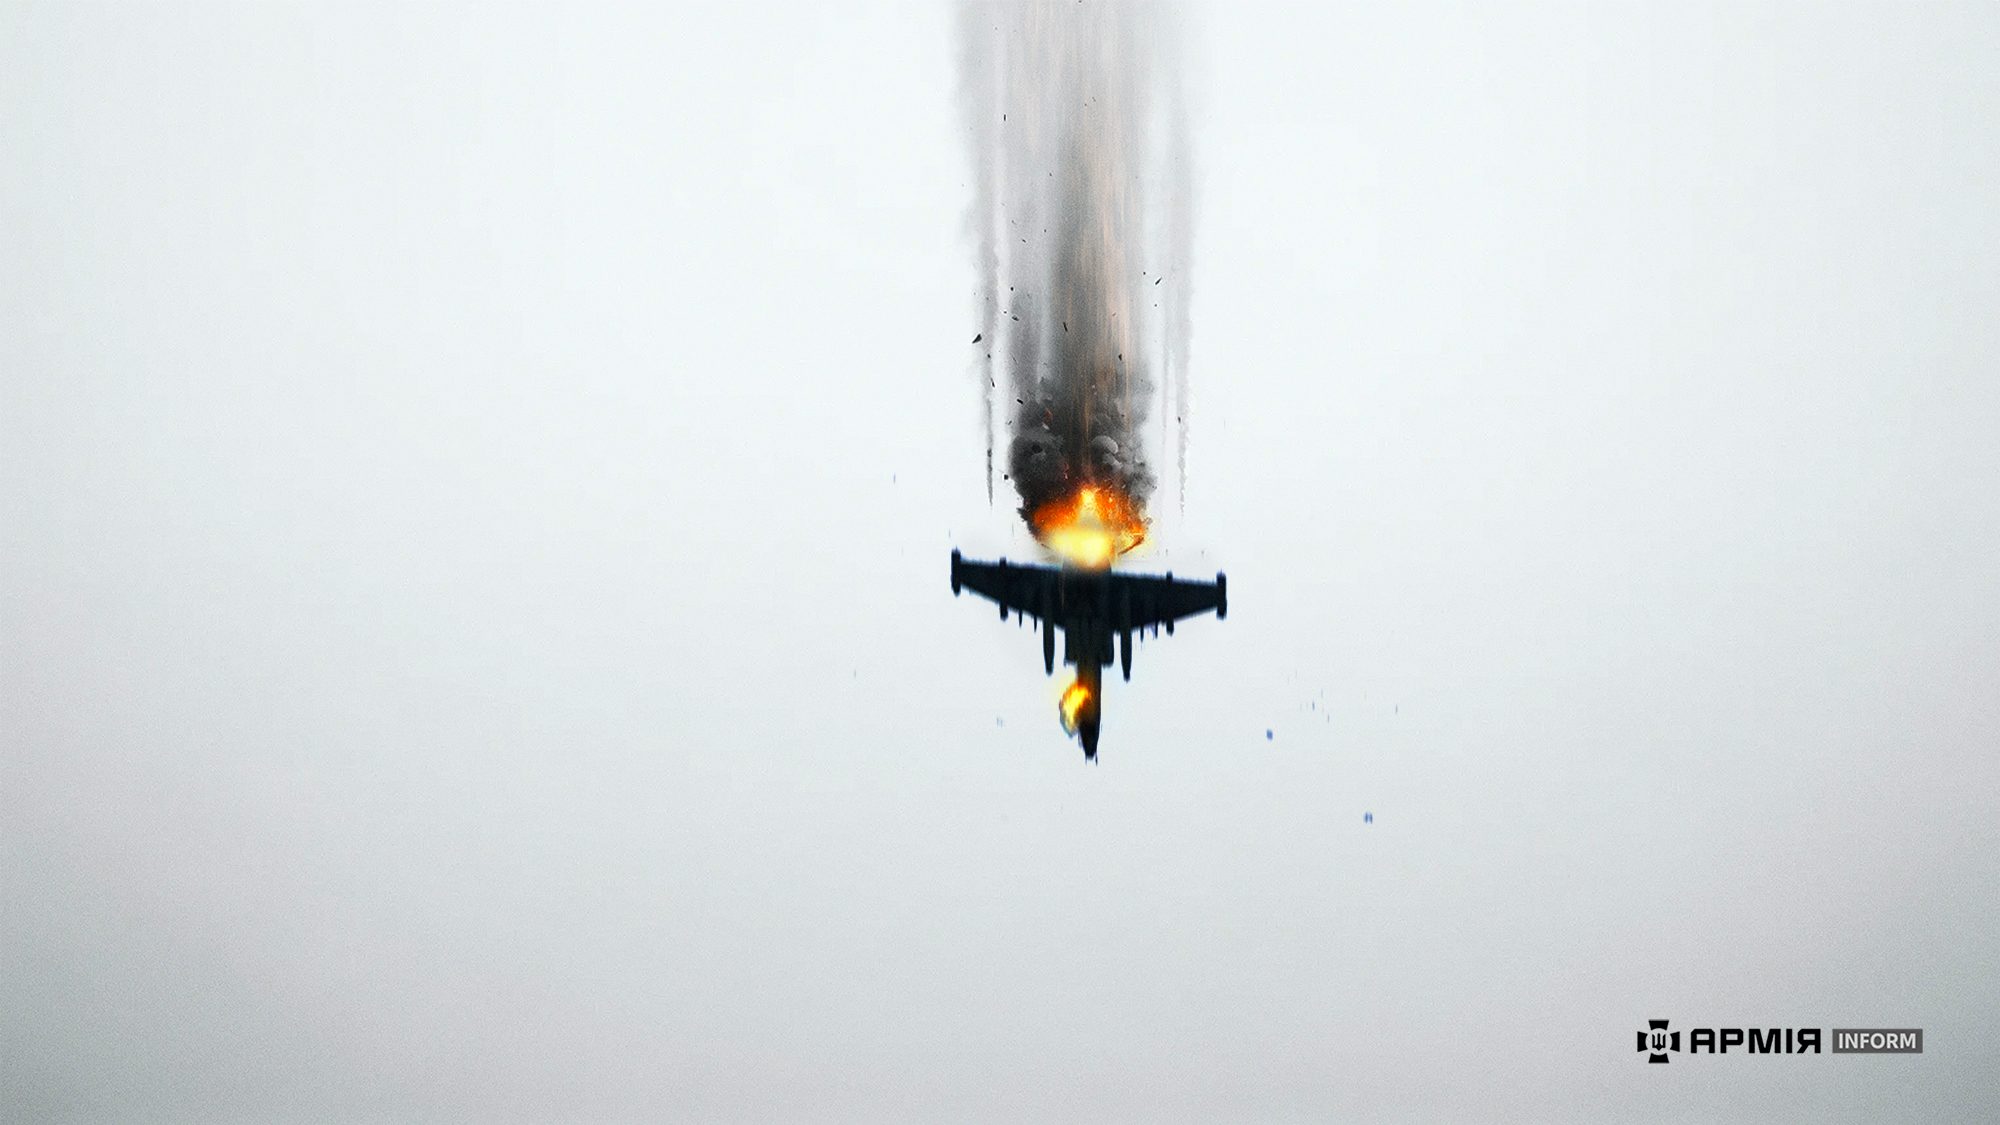 Украинские гвардейцы из ПЗРК “Игла” уничтожили вражеский штурмовик Су-25 (видео)